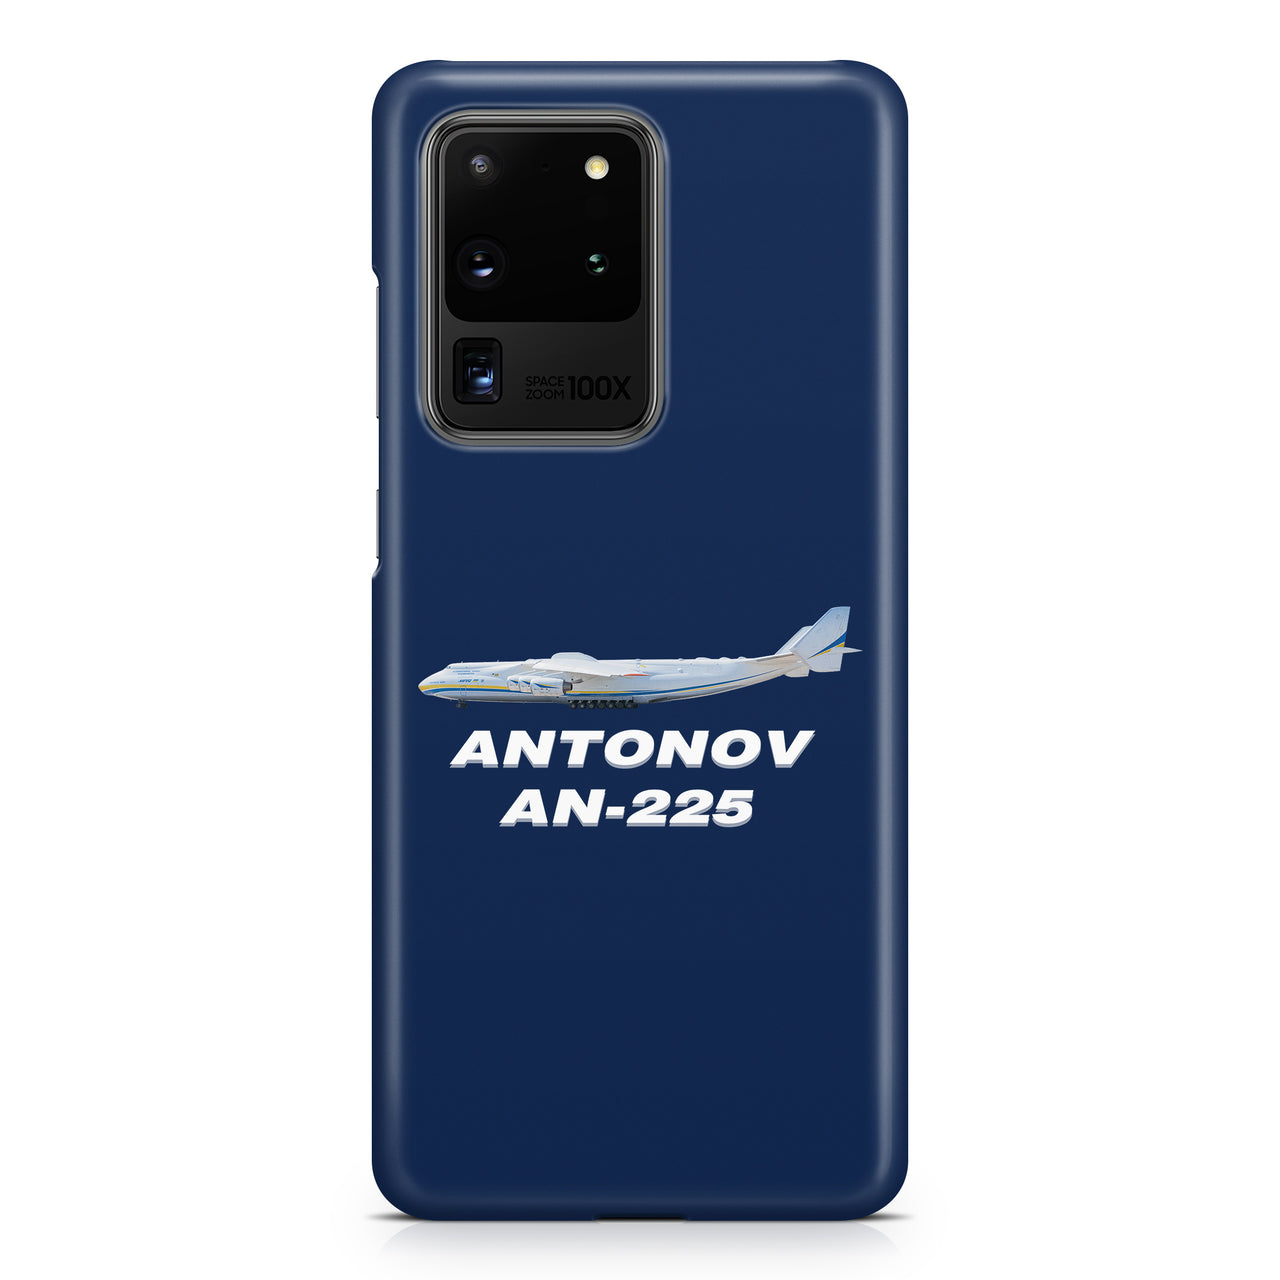 The Antonov AN-225 Samsung A Cases